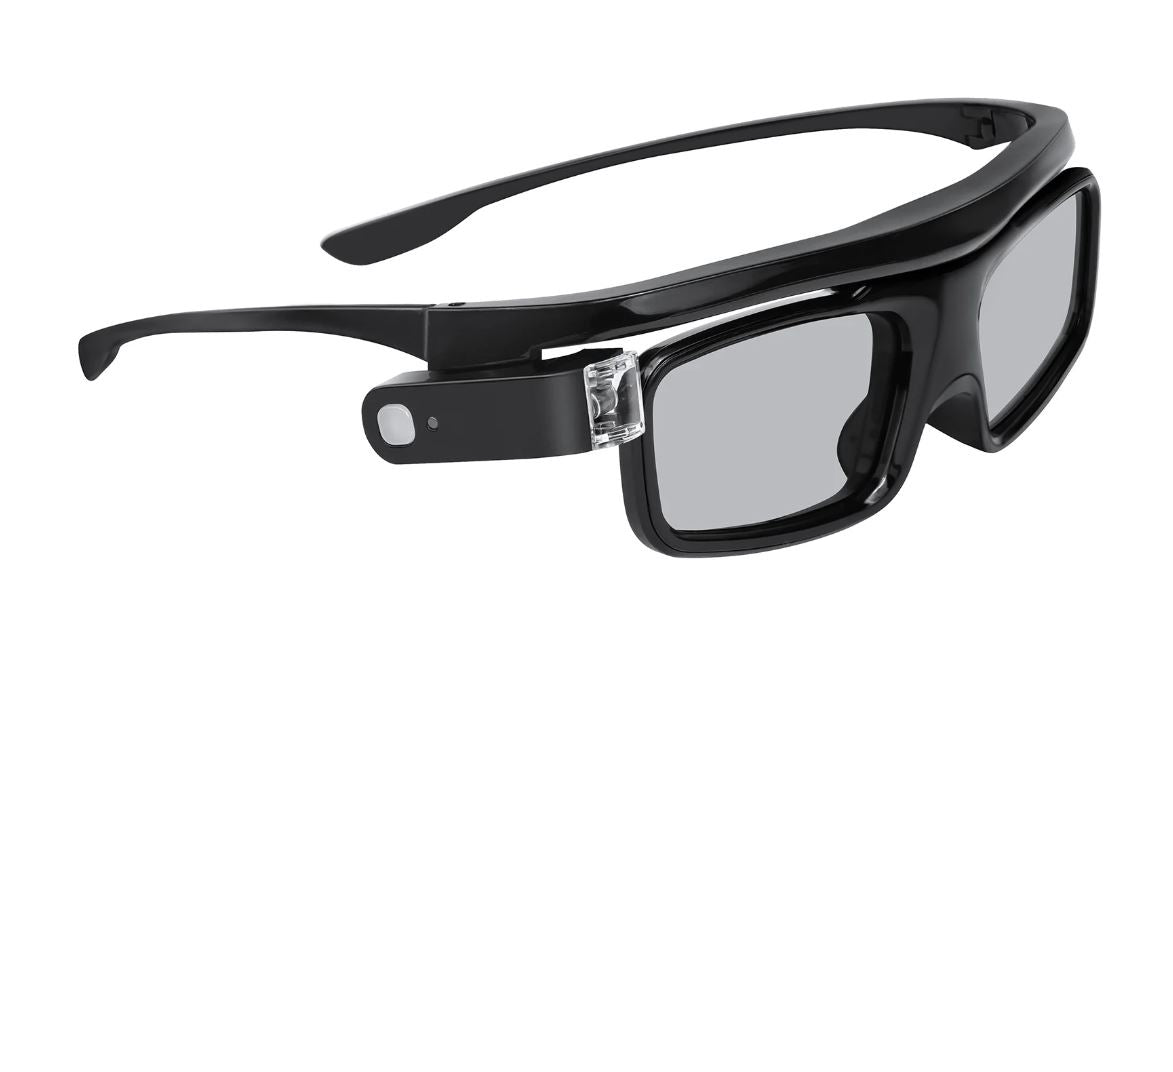 Side view showcasing the product design of NexiGo DLP Link 3D Glasses